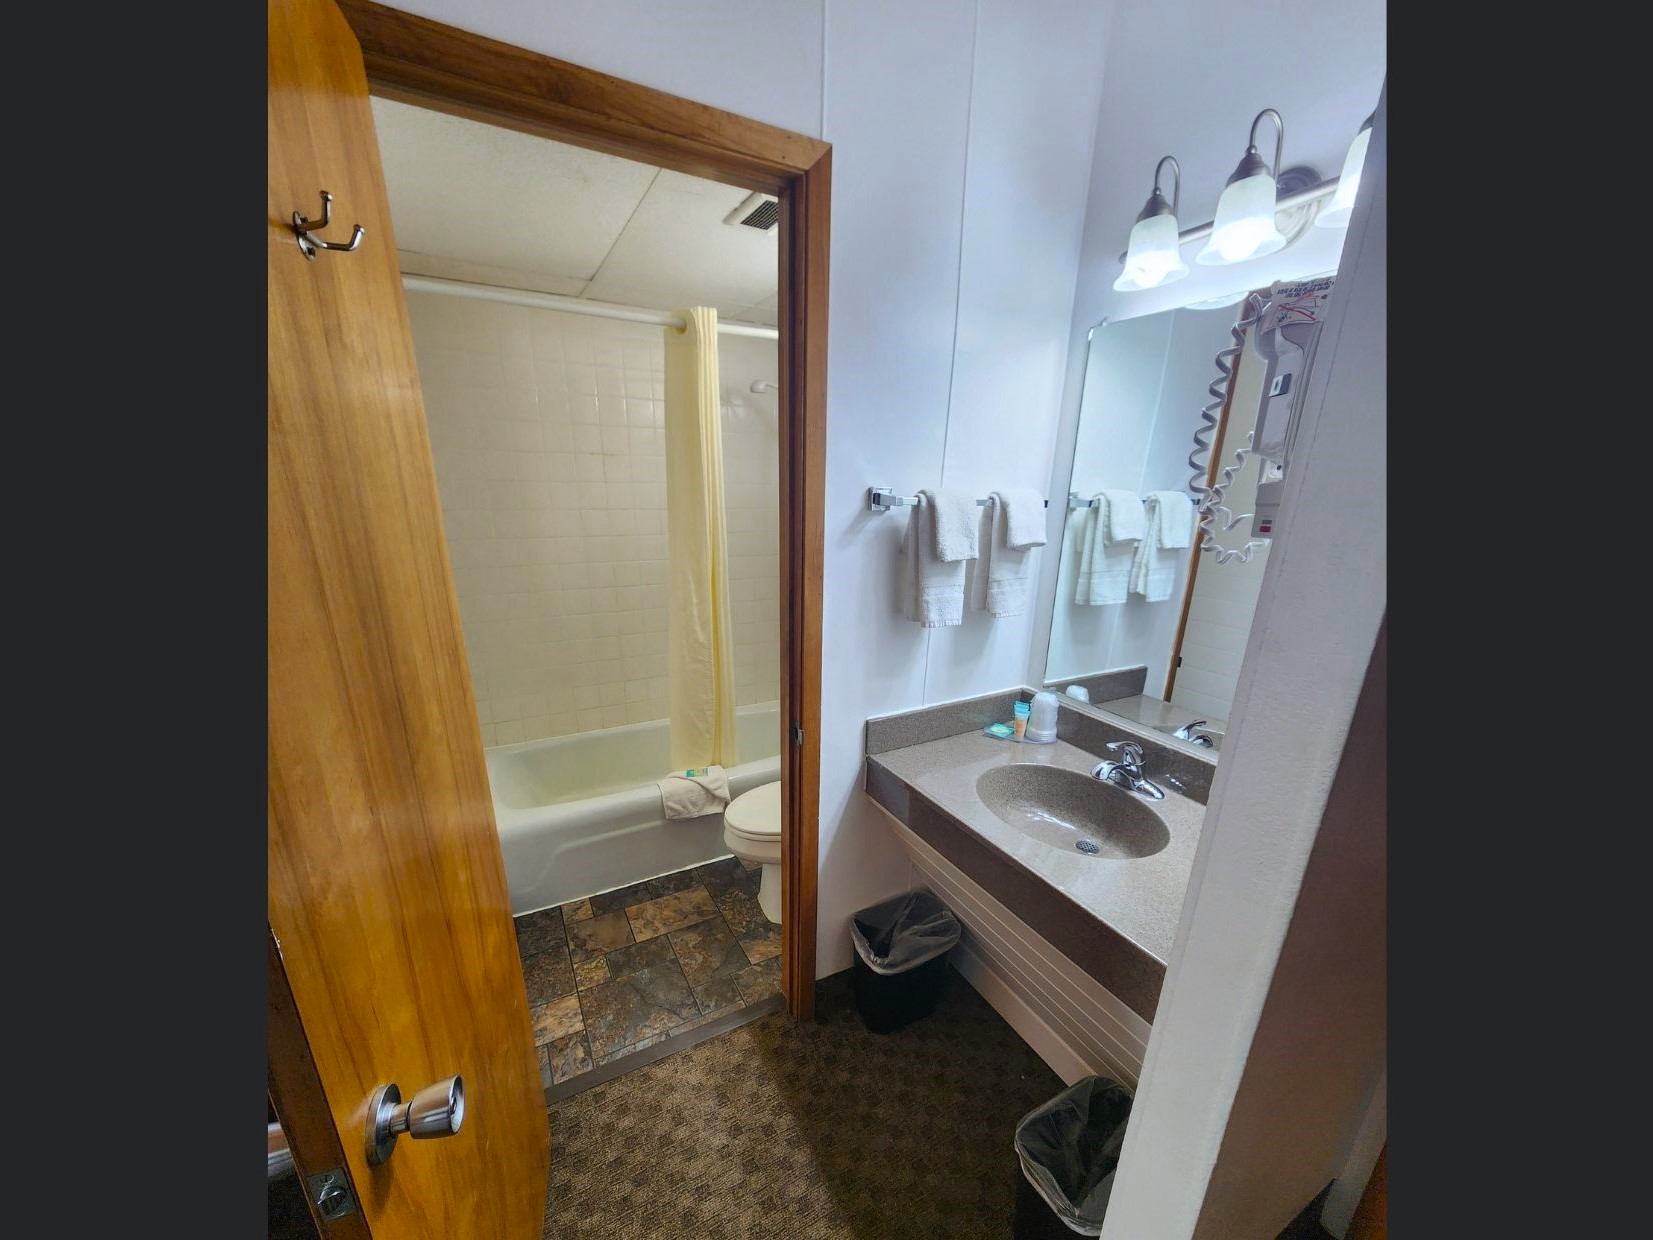 Lavabo, peinador y entrada al baño de la habitación doble